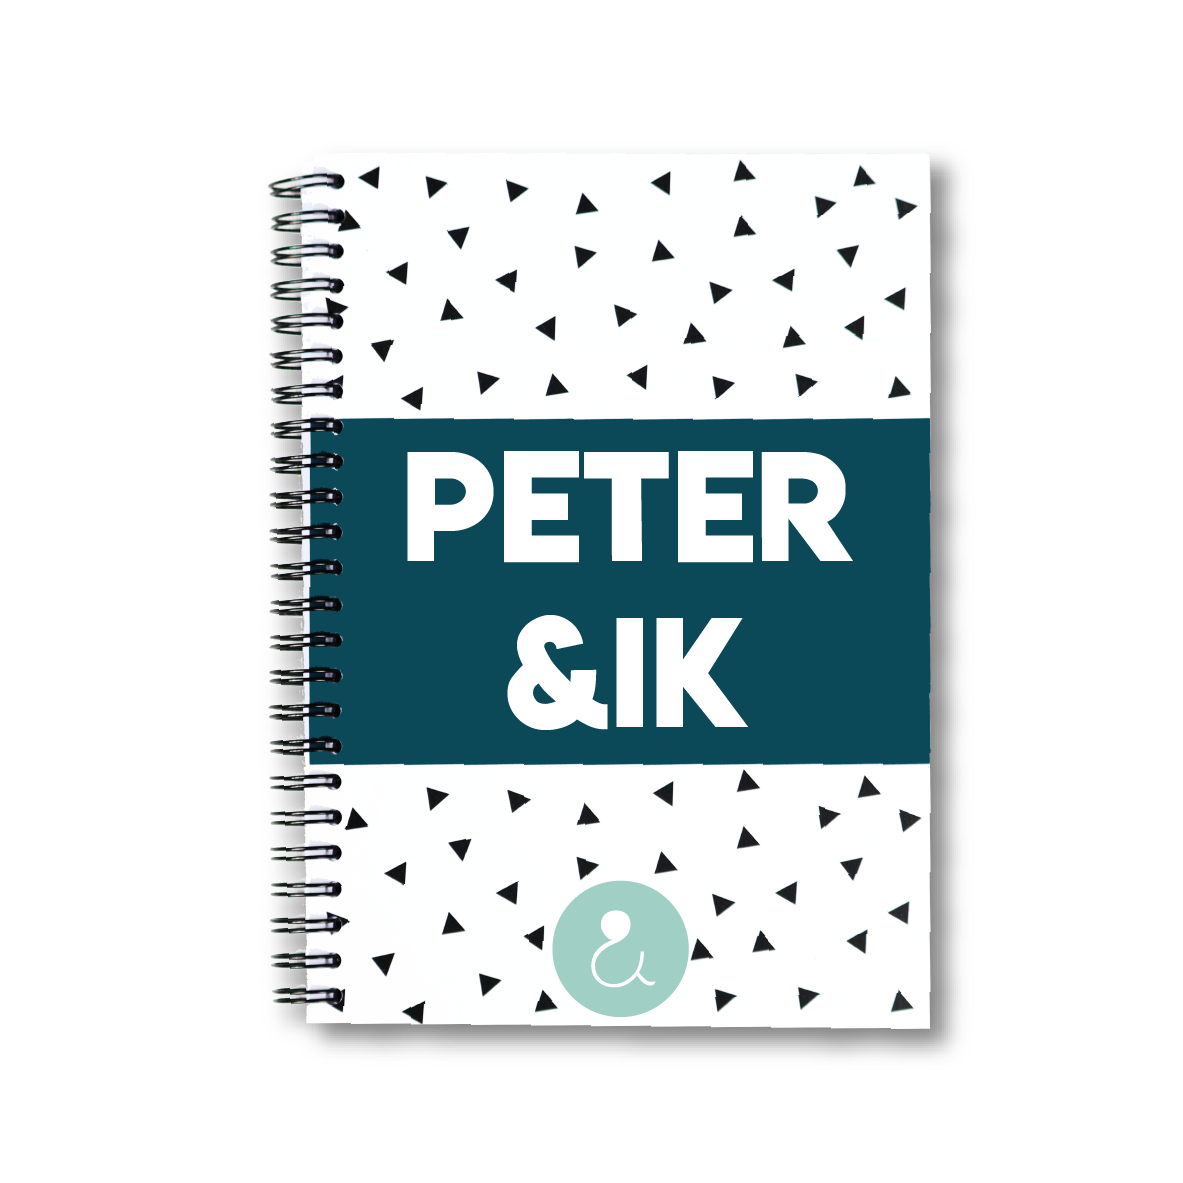 Peter&ik | invulboek voor de peter (mint stip)